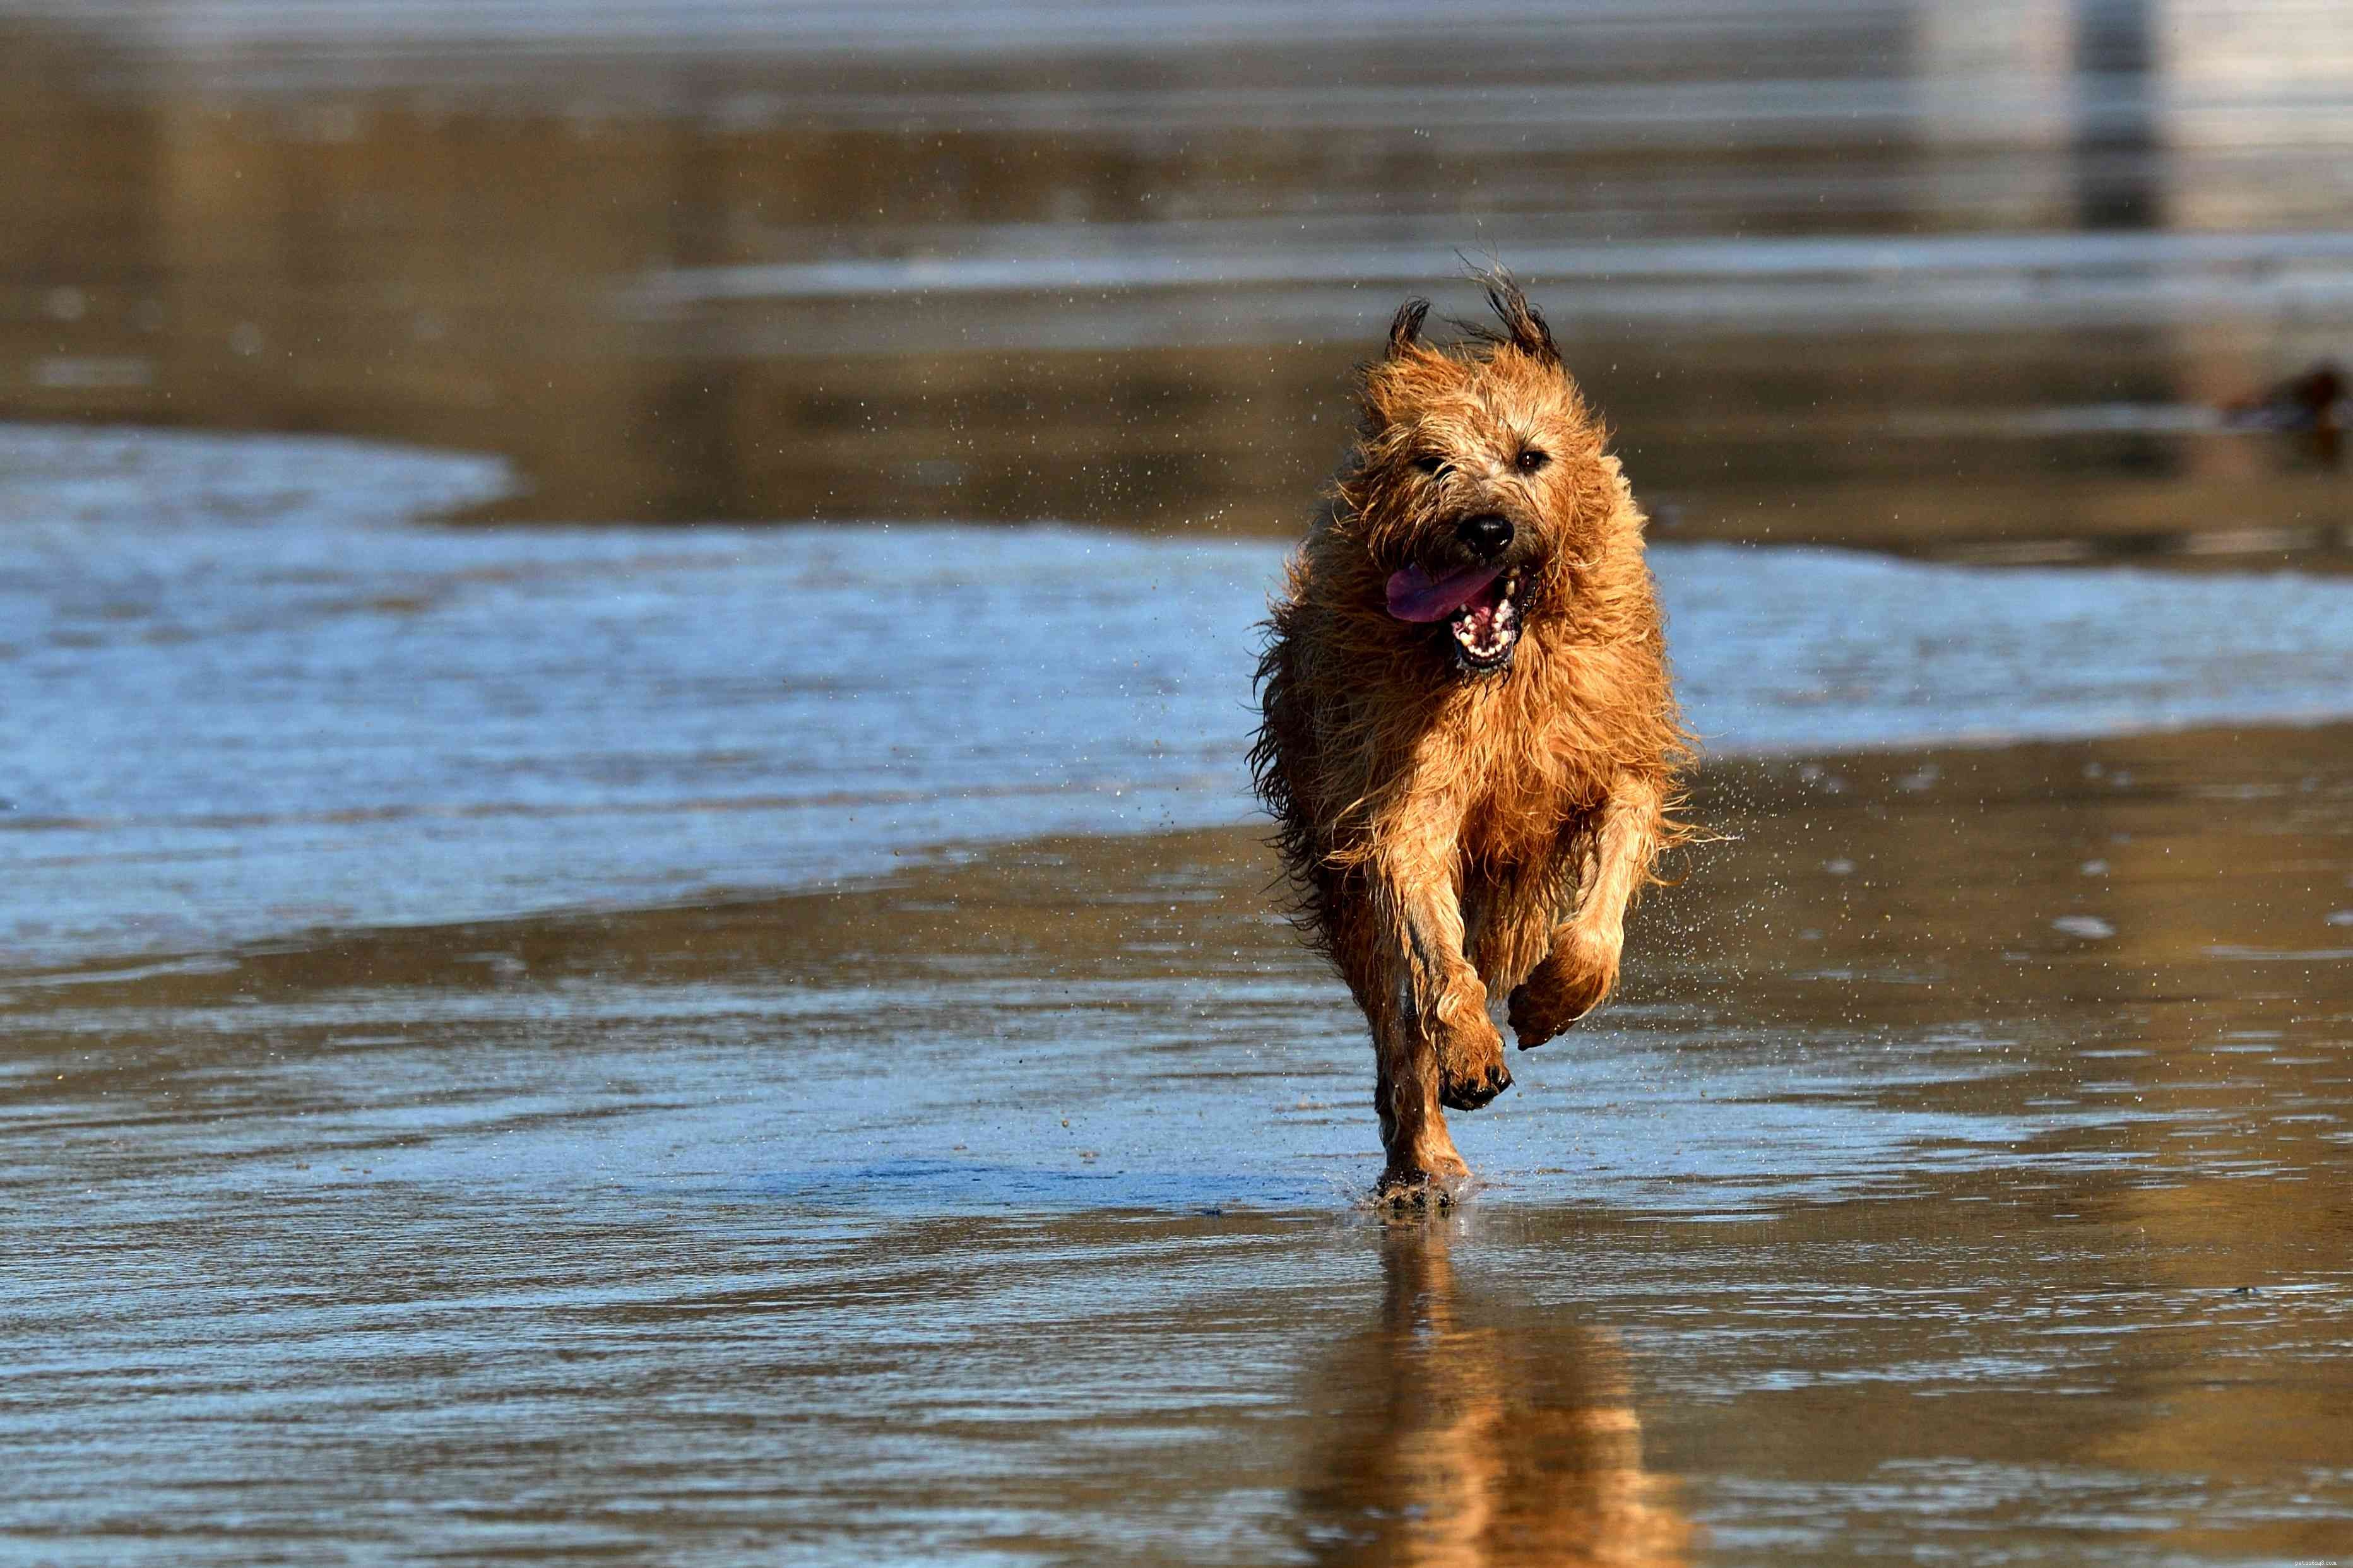 Irish Terrier:caratteristiche e cure della razza canina